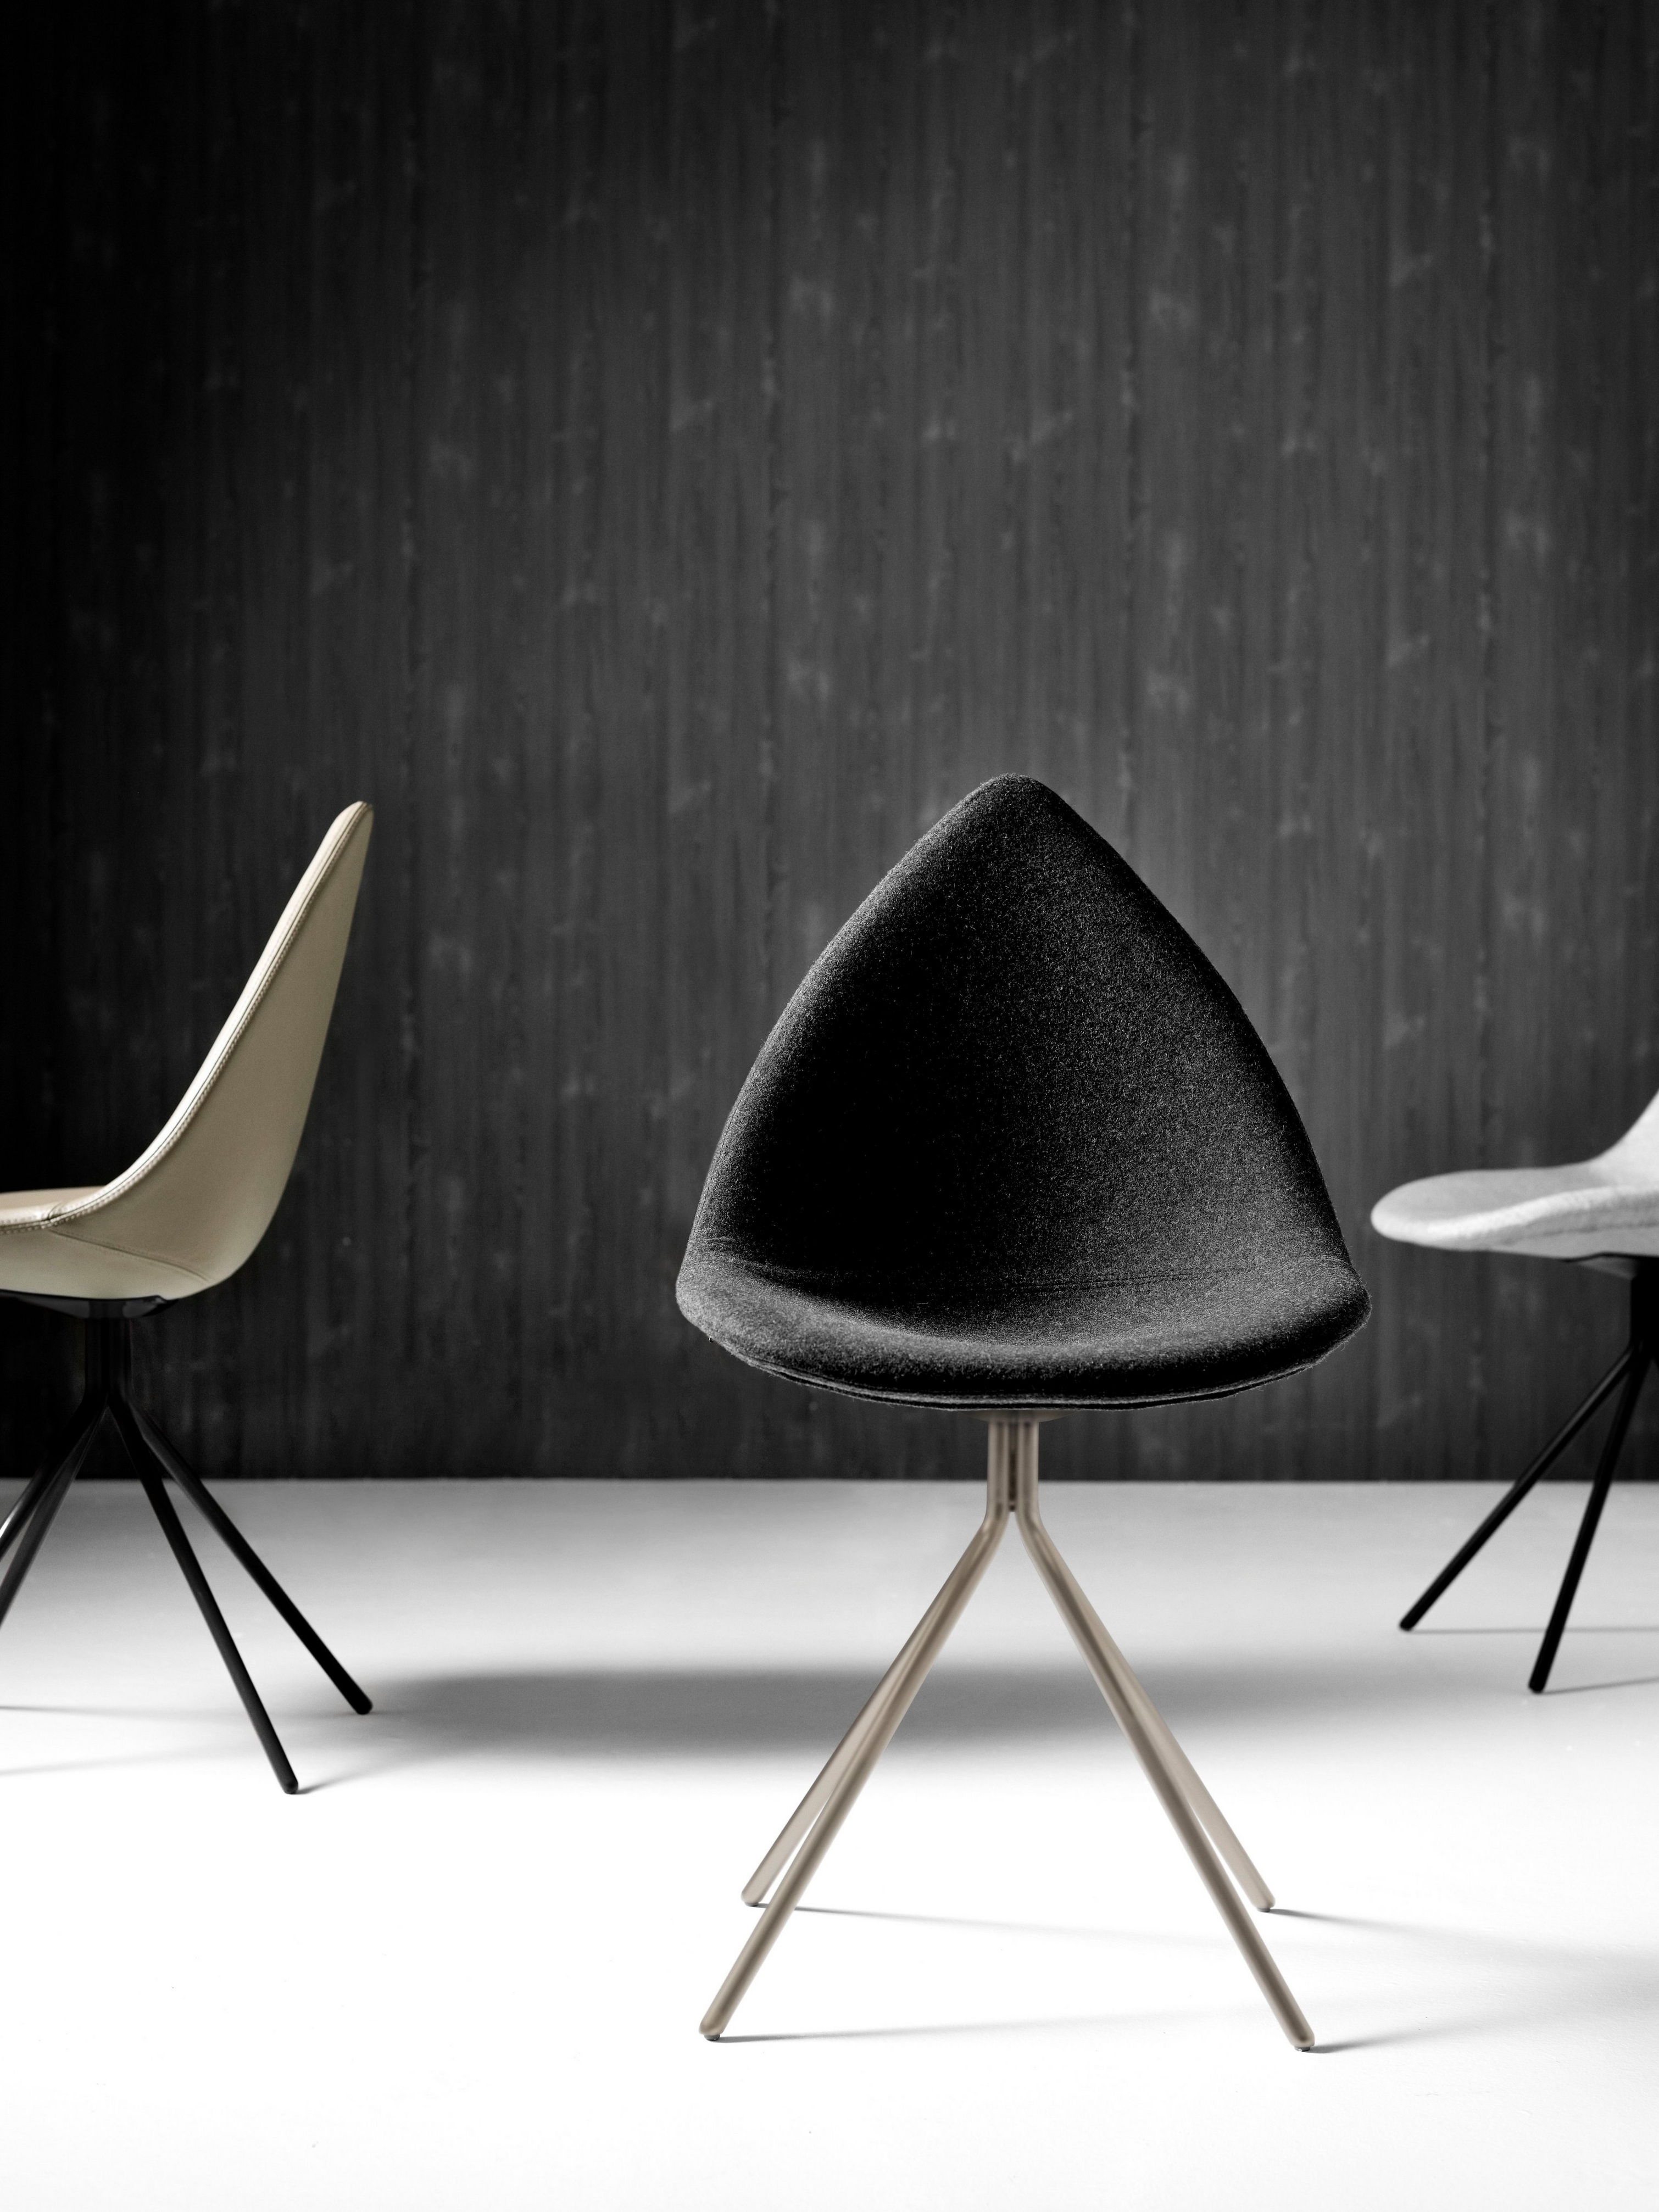 Современные стулья Ottawa в монохромном исполнении на текстурном черном фоне.